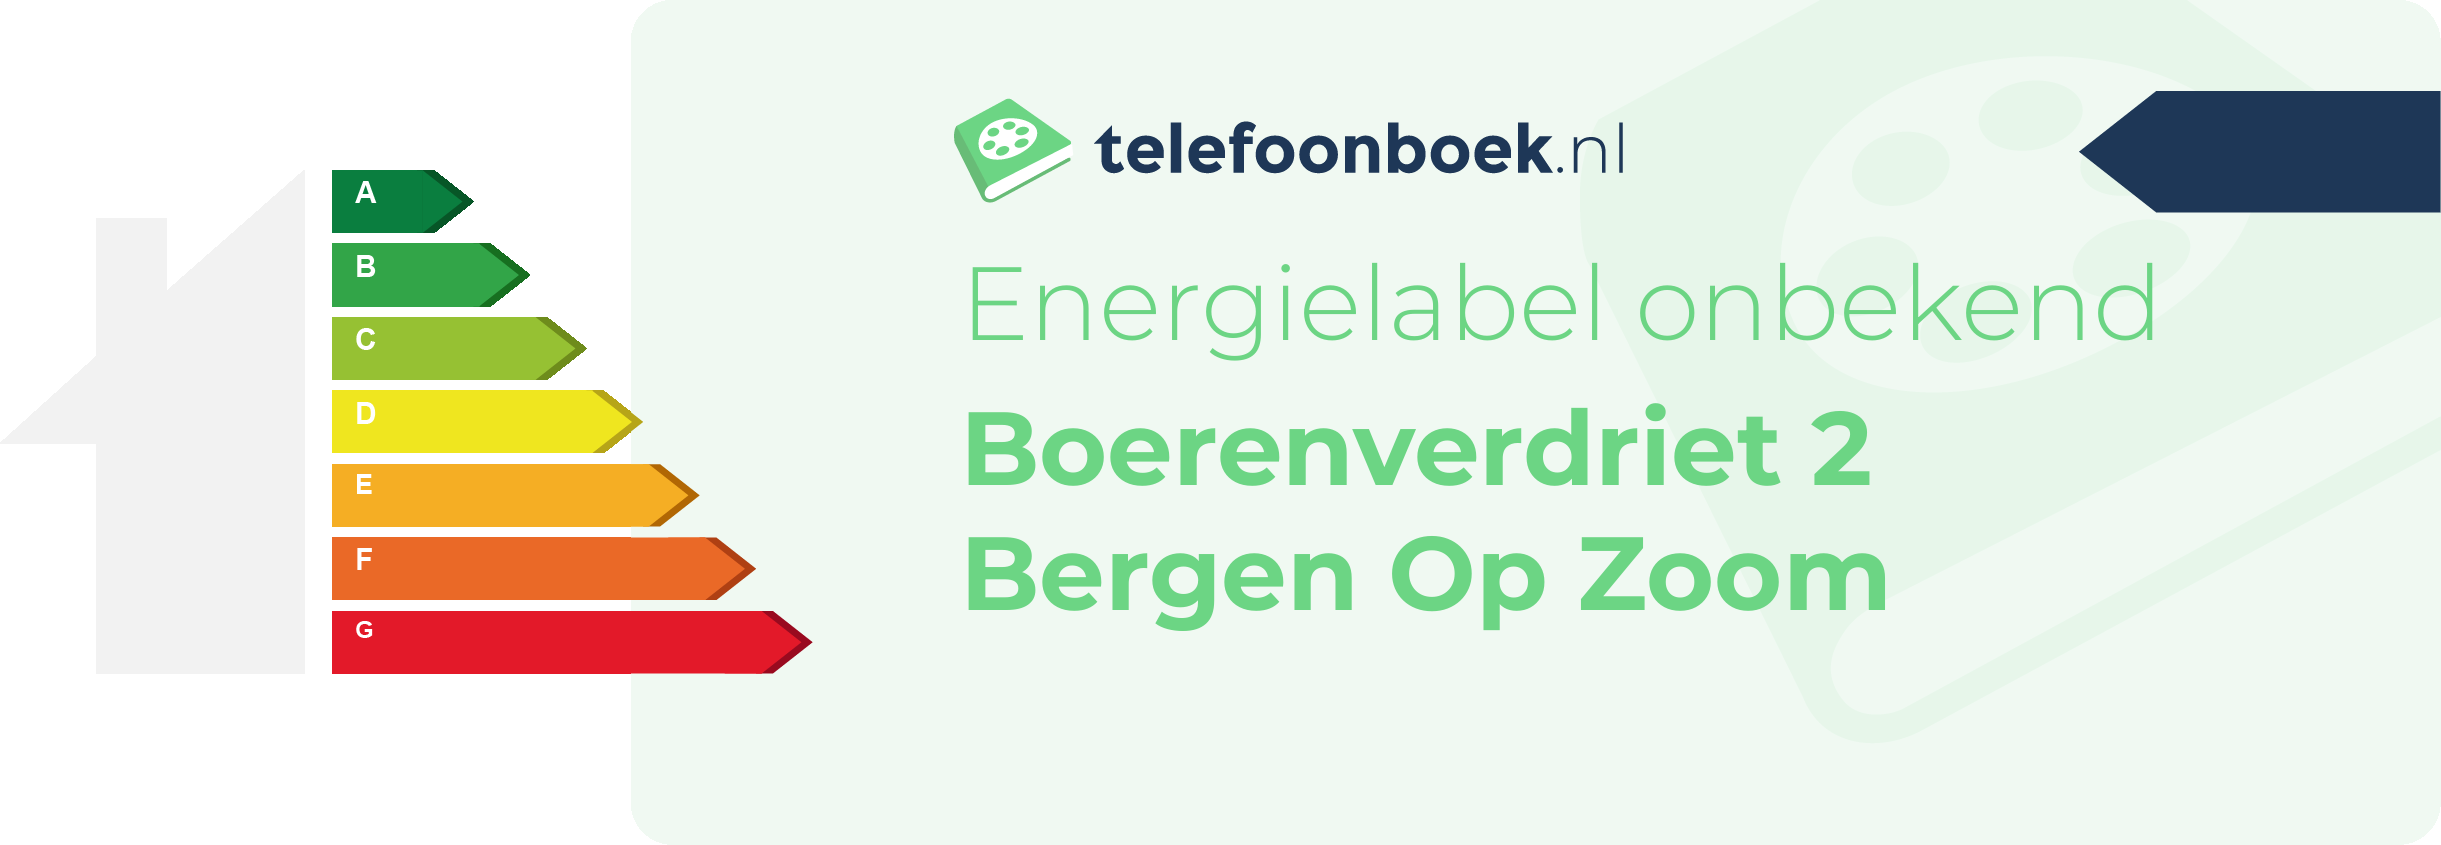 Energielabel Boerenverdriet 2 Bergen Op Zoom